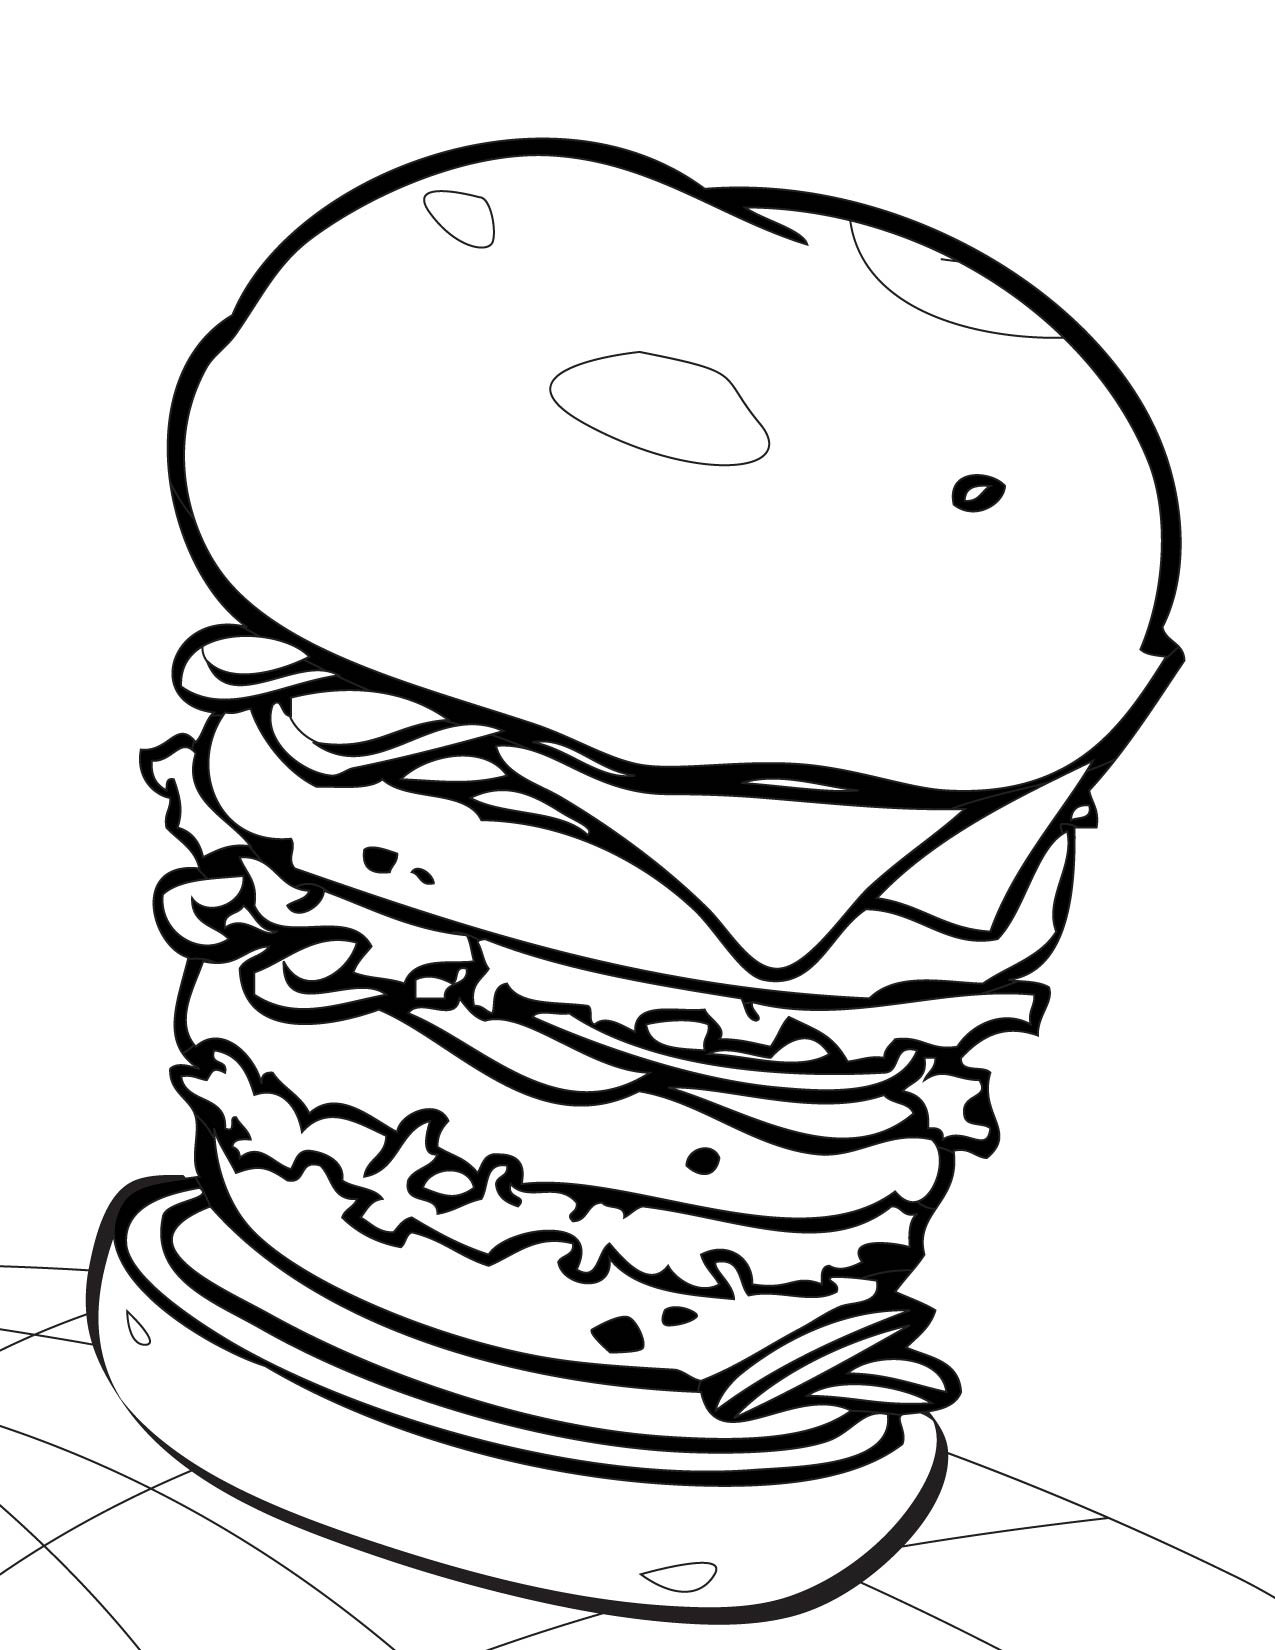 Hamburger Coloring Pages
 Hamburger Sheet Coloring Pages